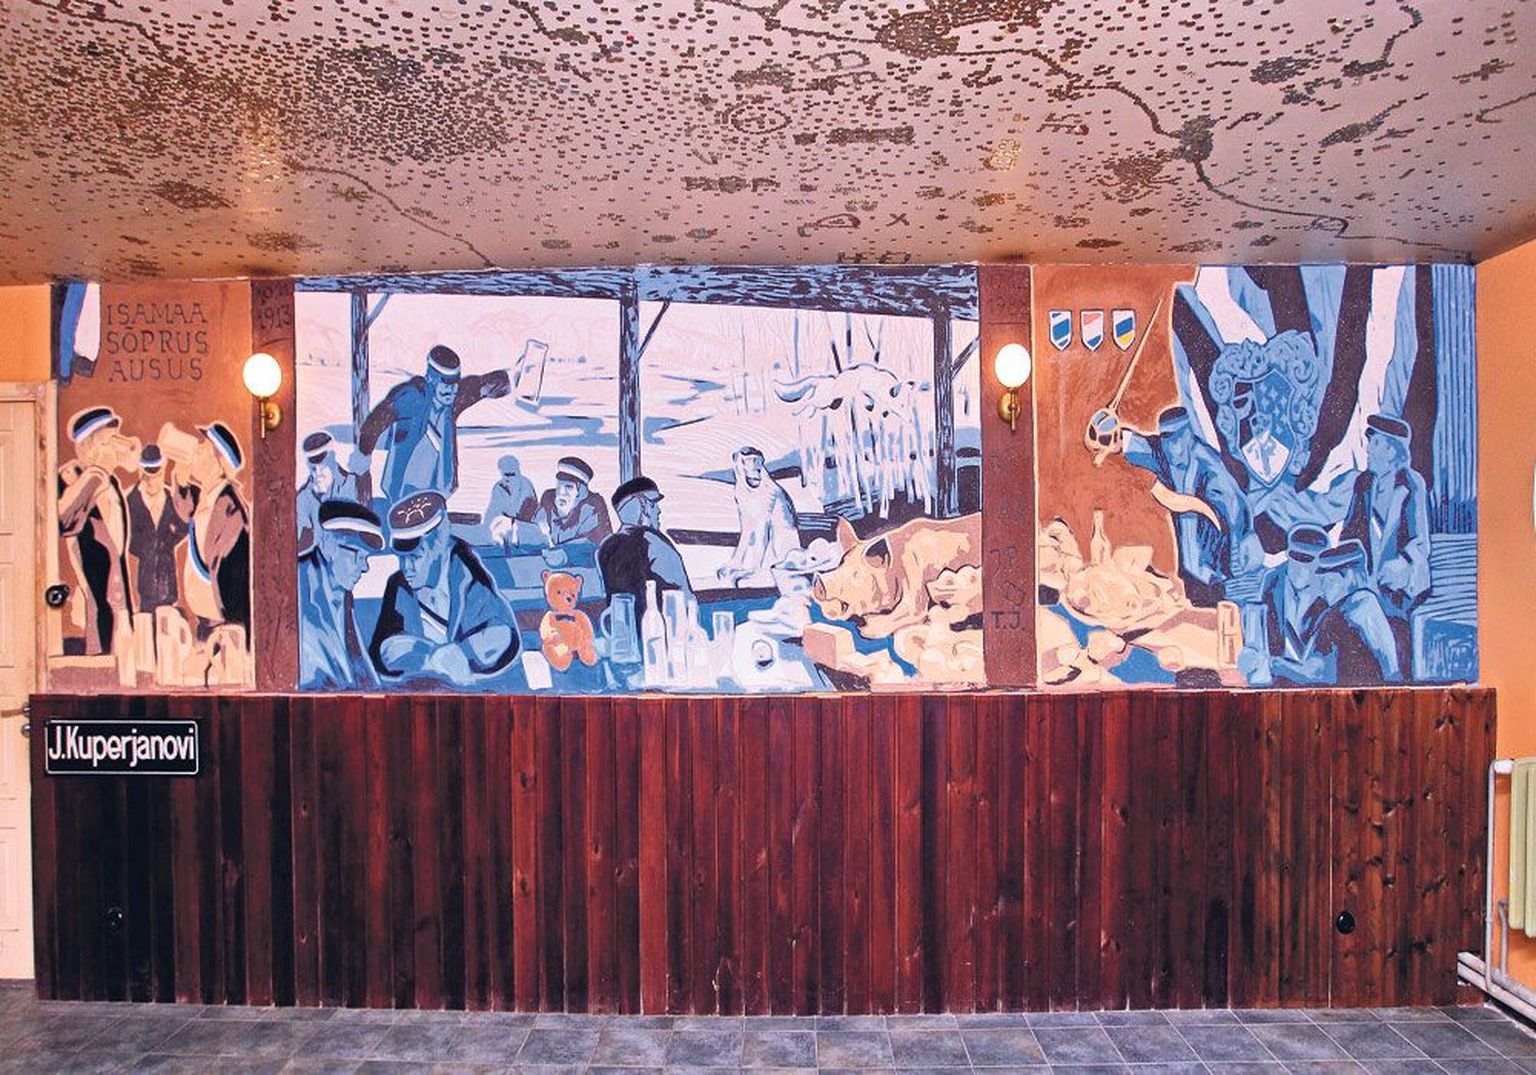 Korporatsiooni  Ugala keldrikorruse ühe ruumi  seinal on äsja valminud  sgrafiitotehnikas teos, millel on kõrgust 1,5 ja laiust 6,3 meetrit.